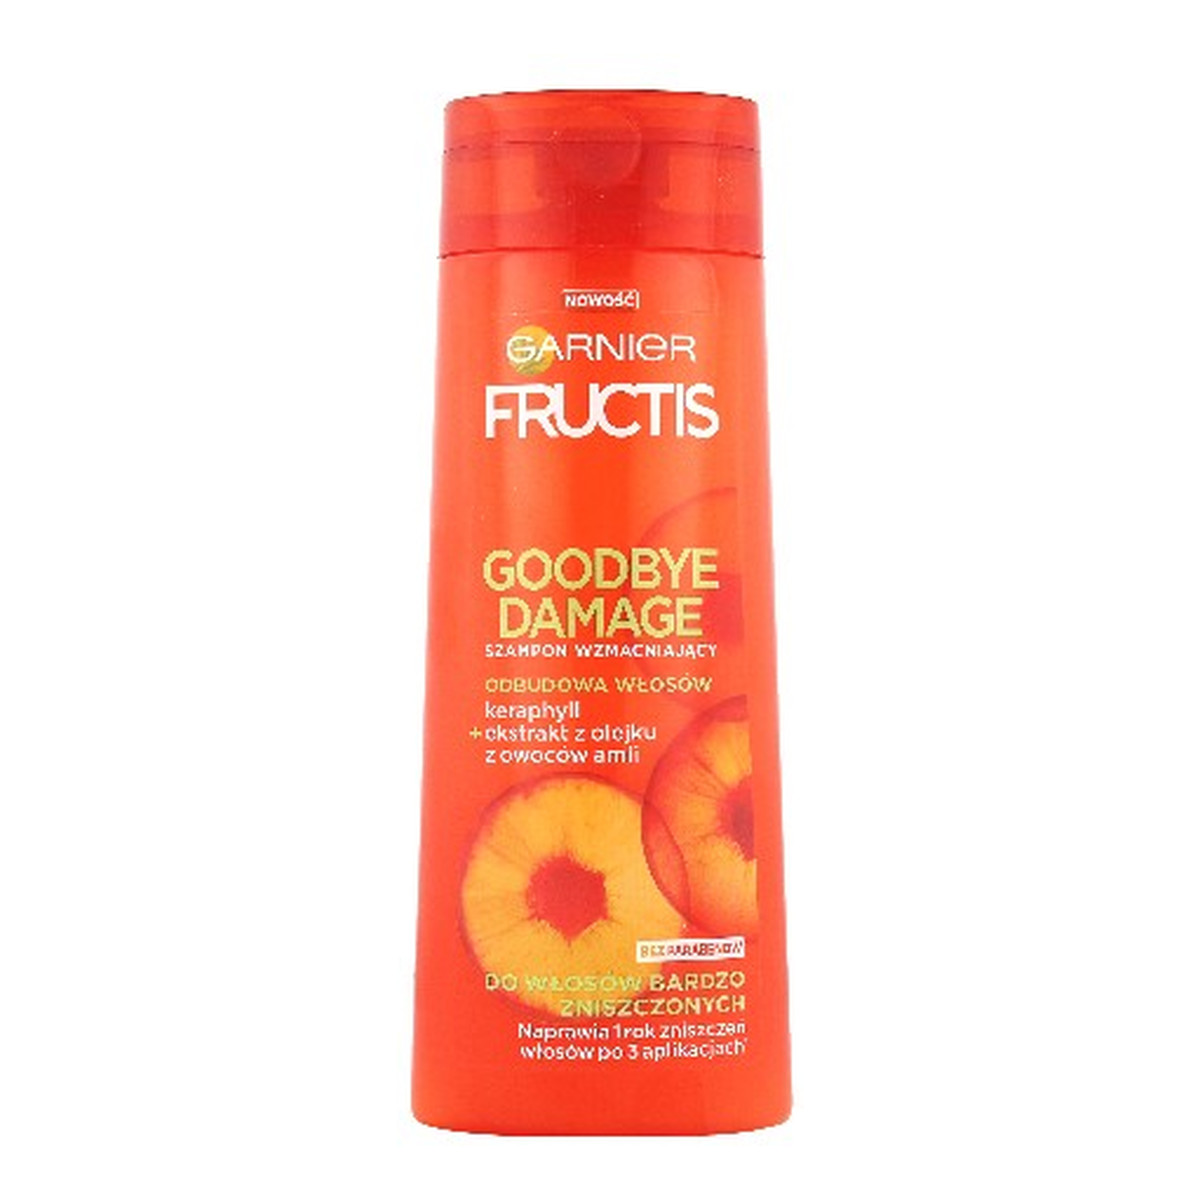 Garnier Fructis Goodbye Damage szampon wzmacniający do włosów bardzo zniszczonych 250ml